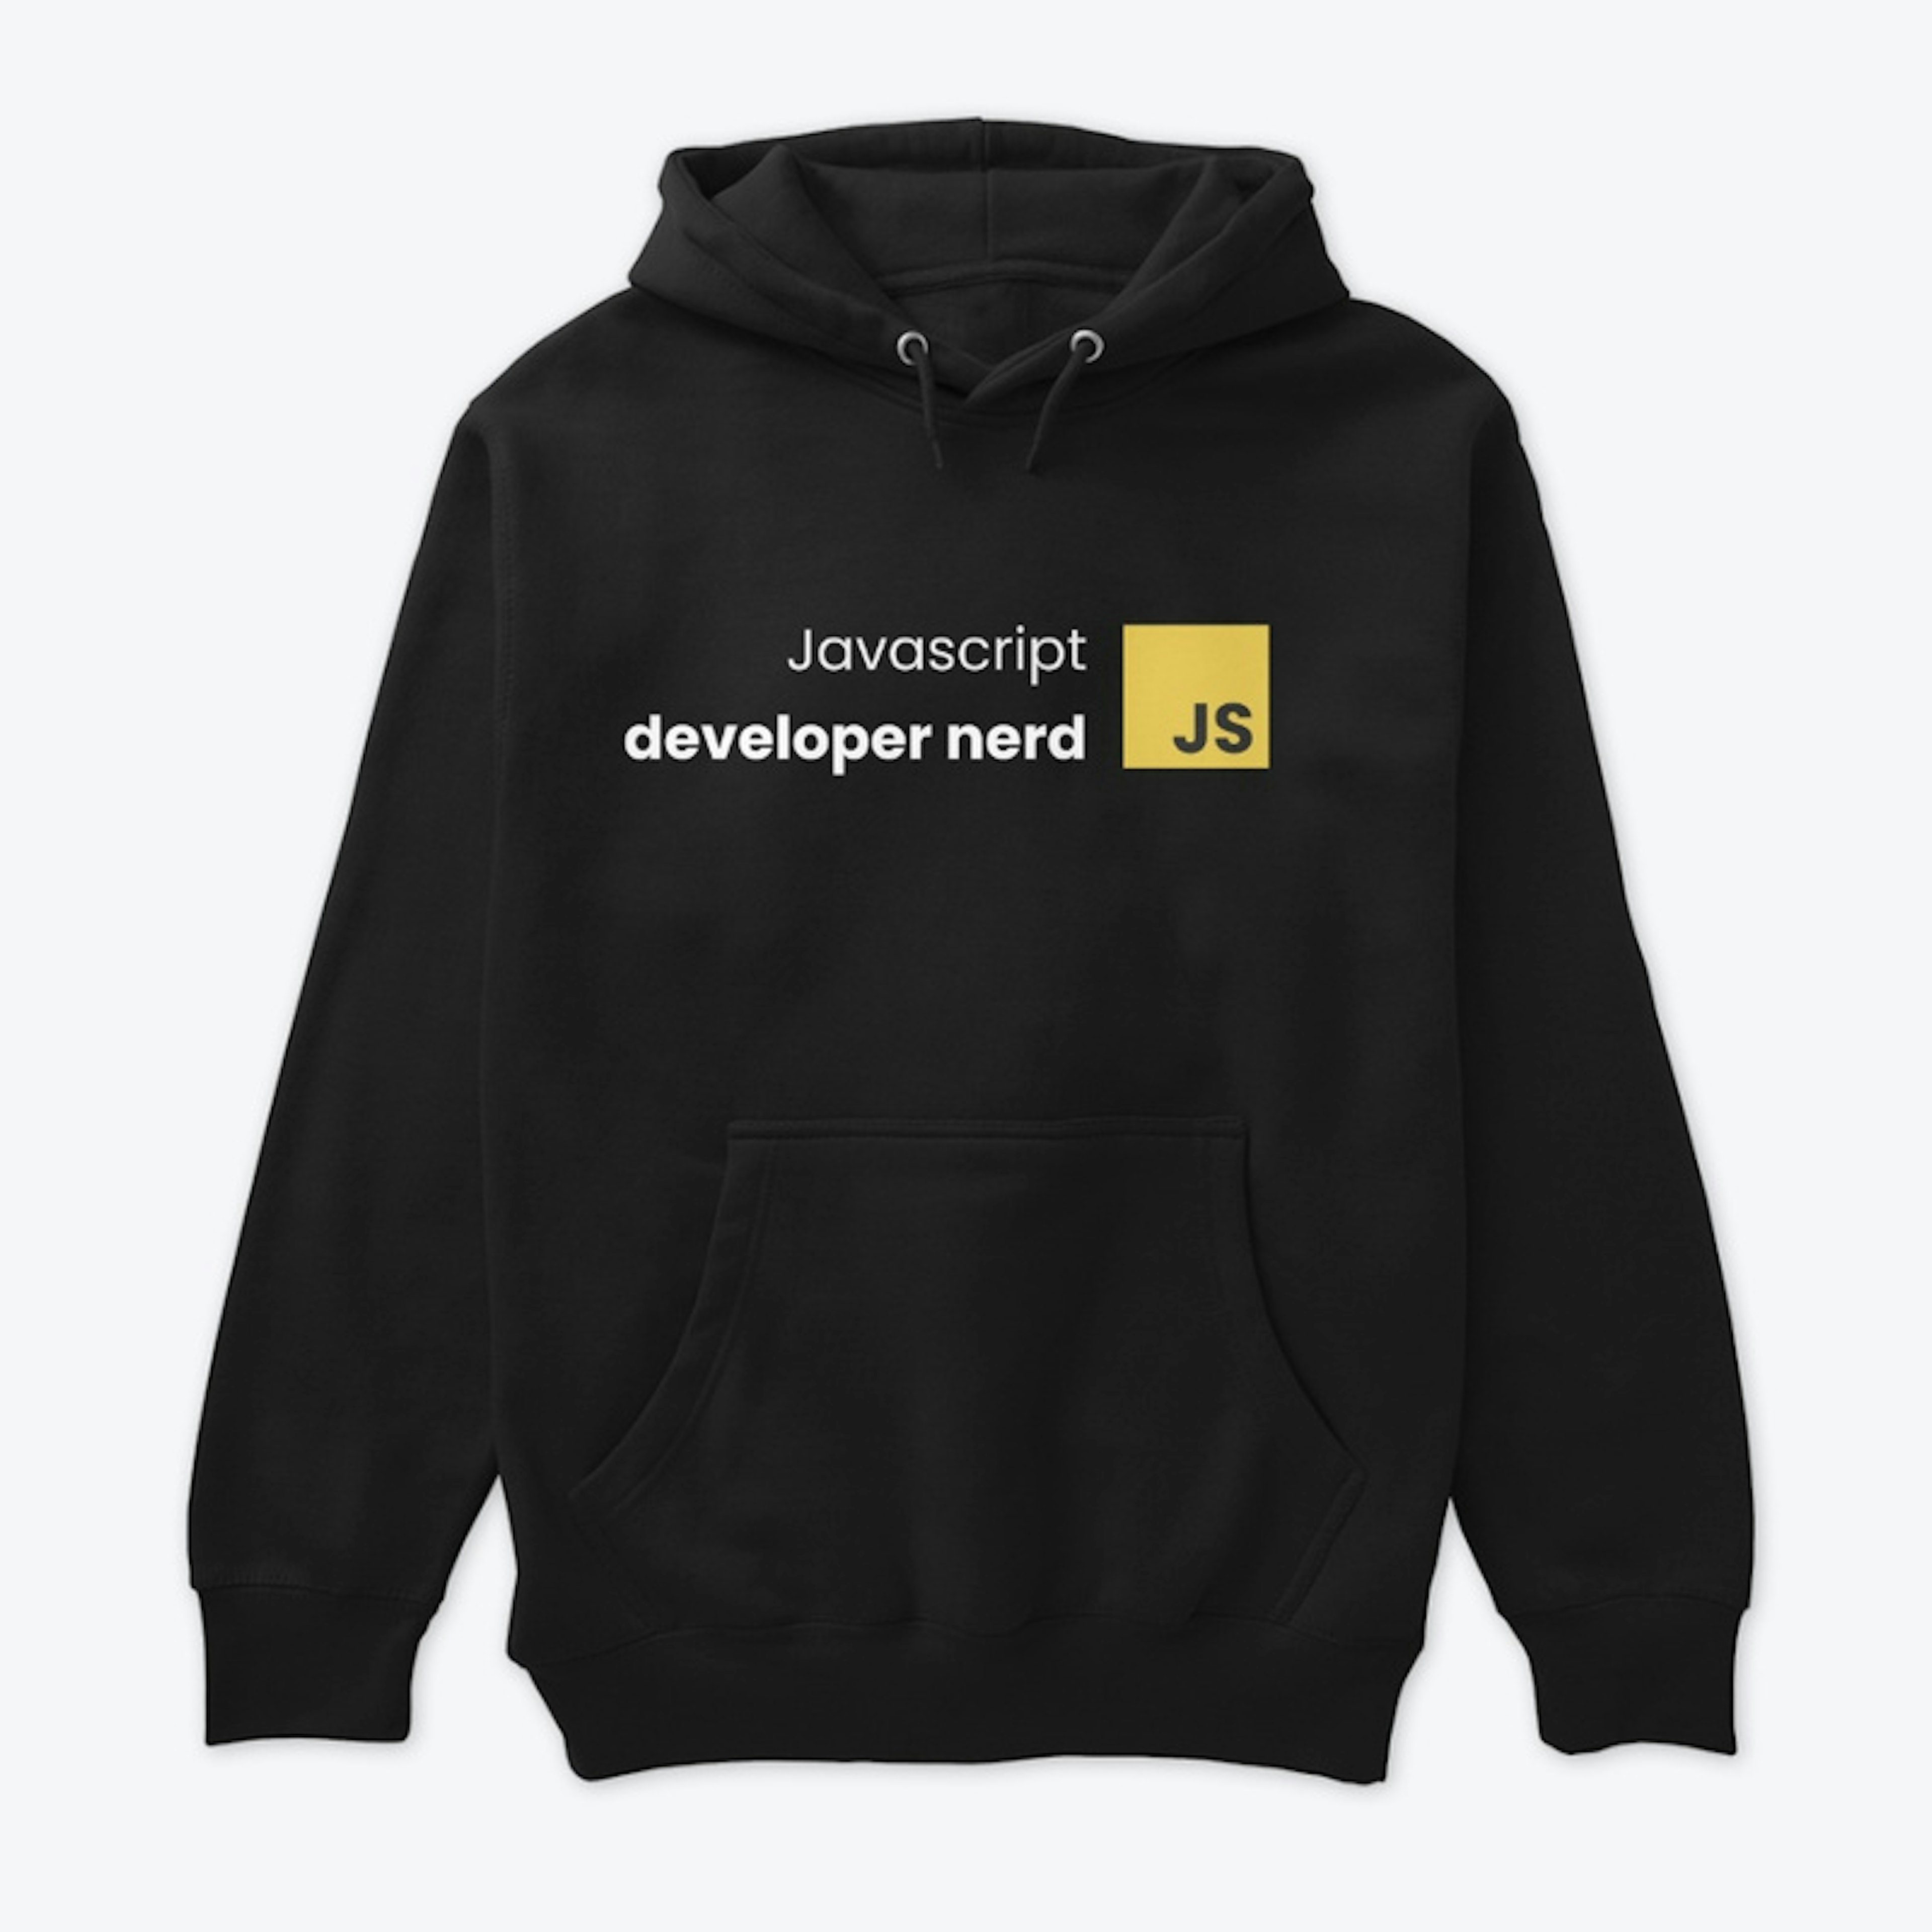 Javascript nerd developer